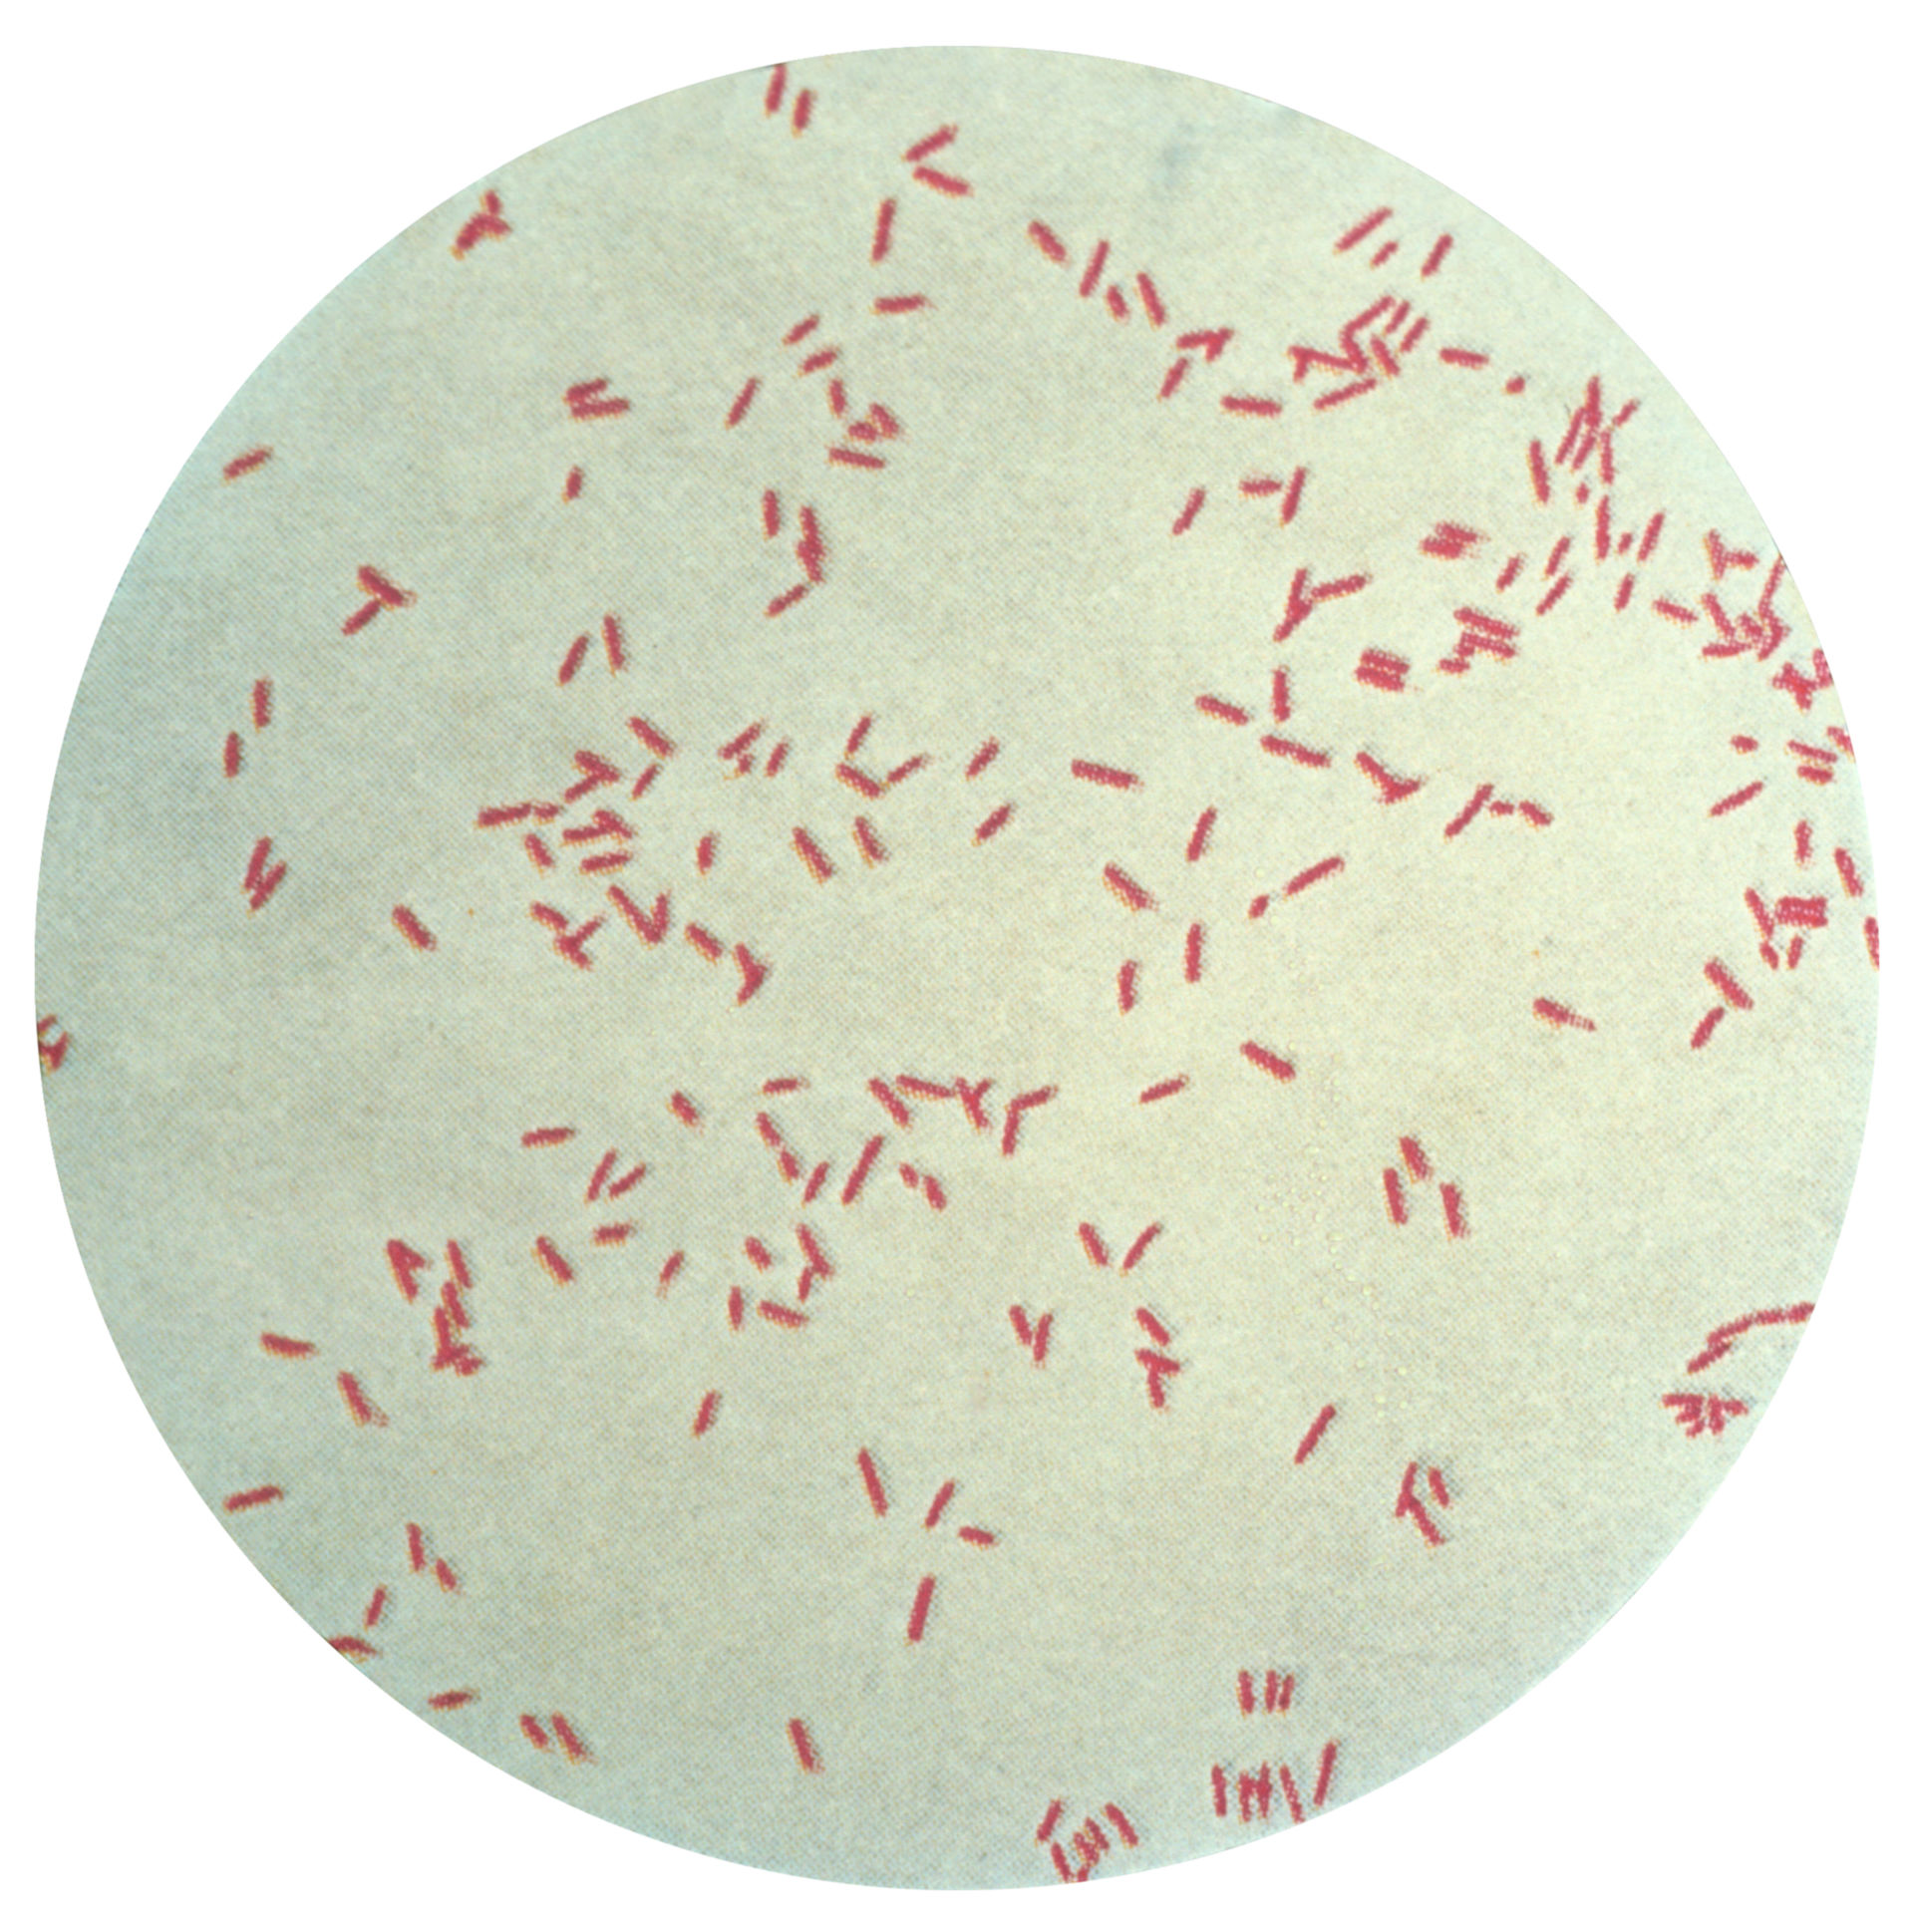 Синегнойная палочка под микроскопом. Pseudomonas Fluorescens колония. Бактерии рода Pseudomonas. Синегнойная палочка псевдомоноз.